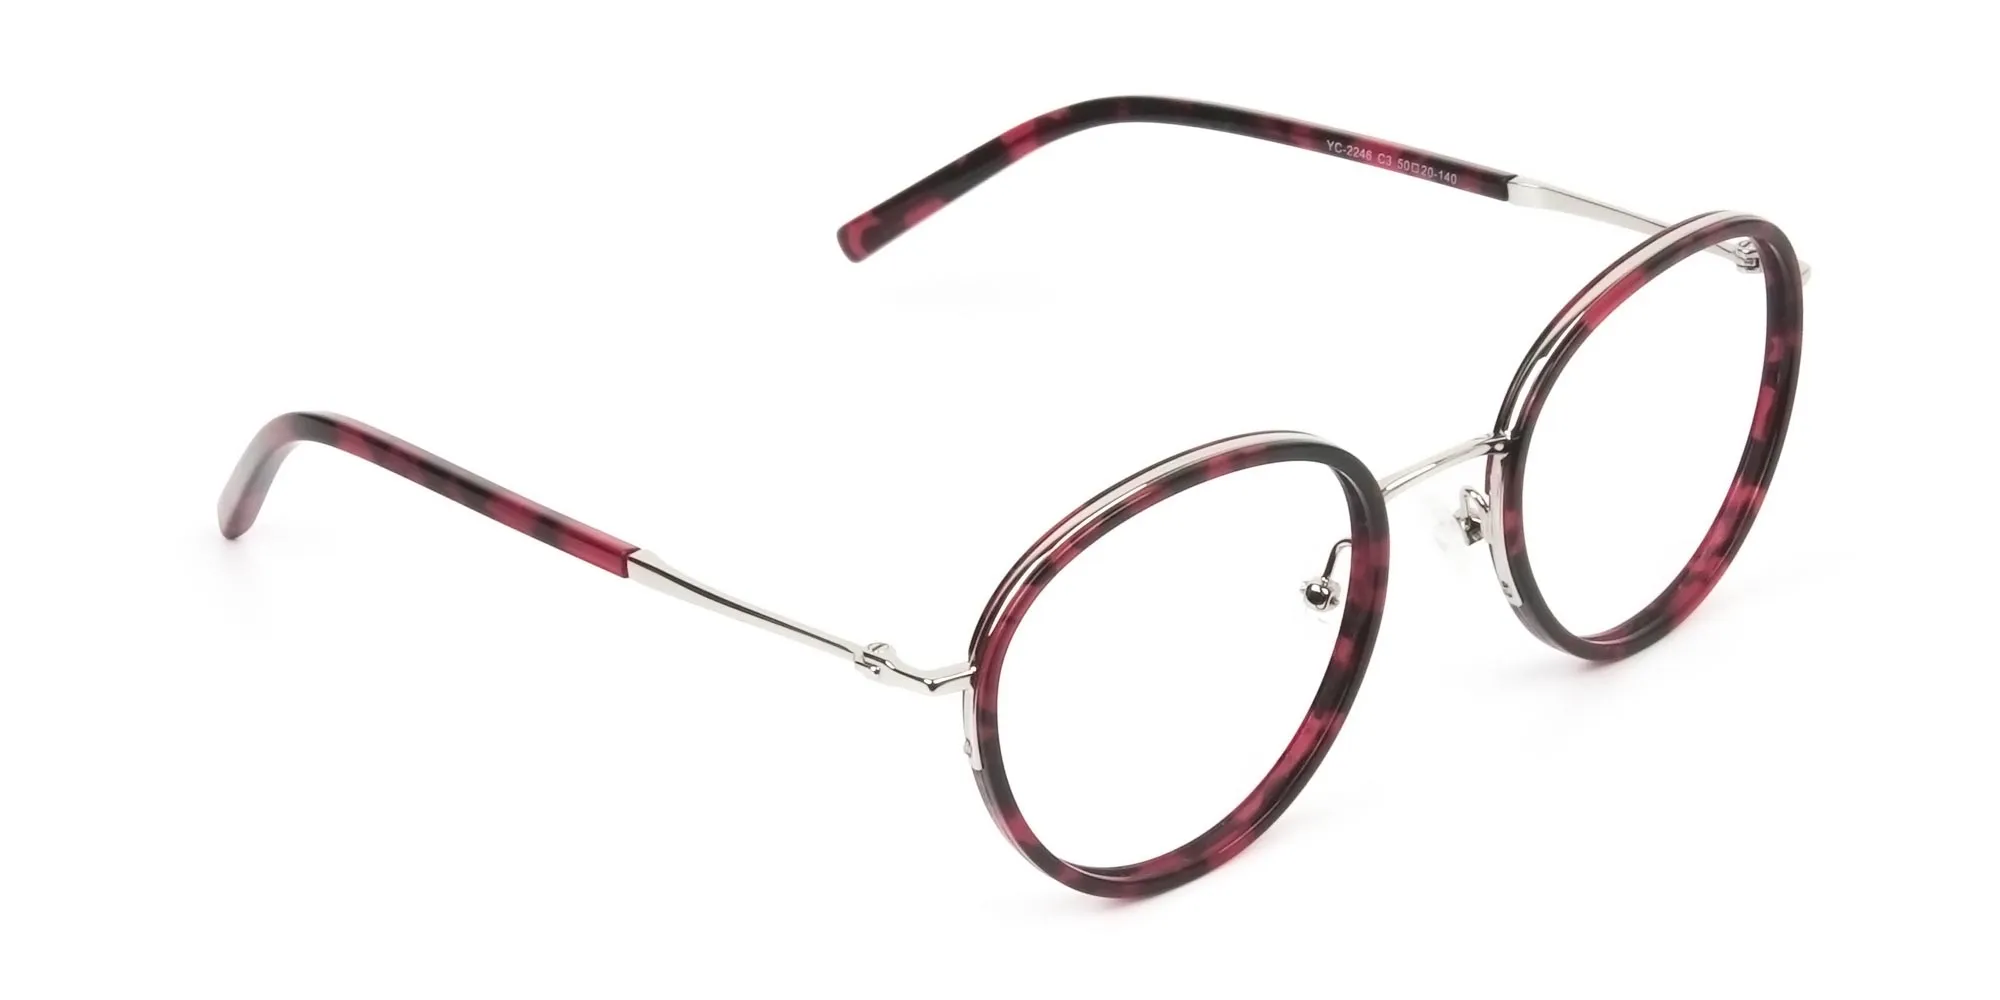 Retro Silver & Red Circular Glasses - 2